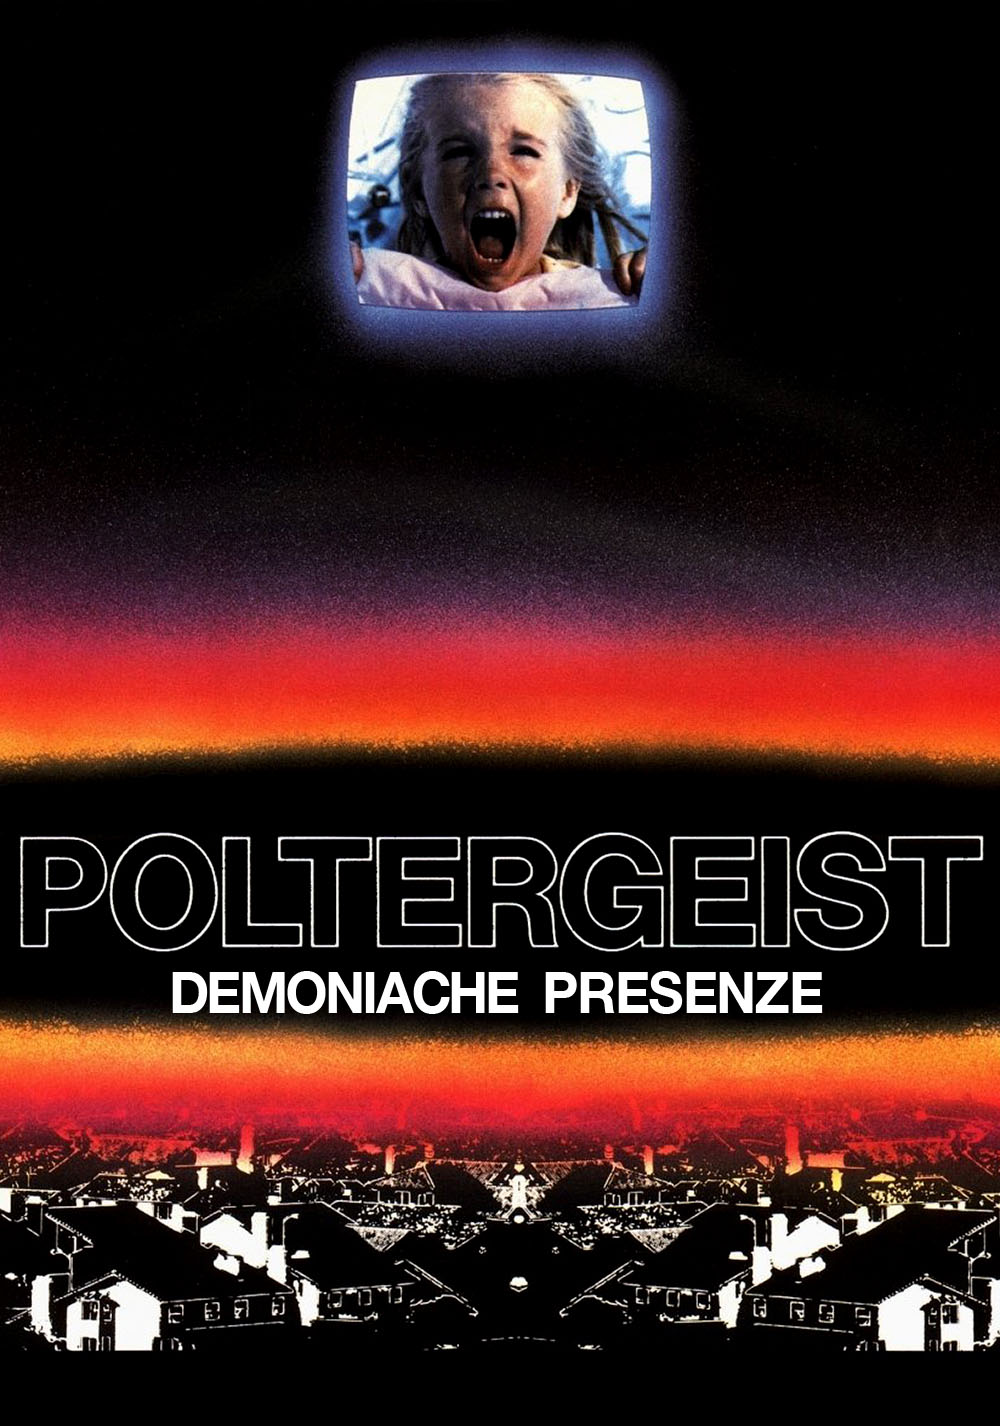 Poltergeist (1982) Art